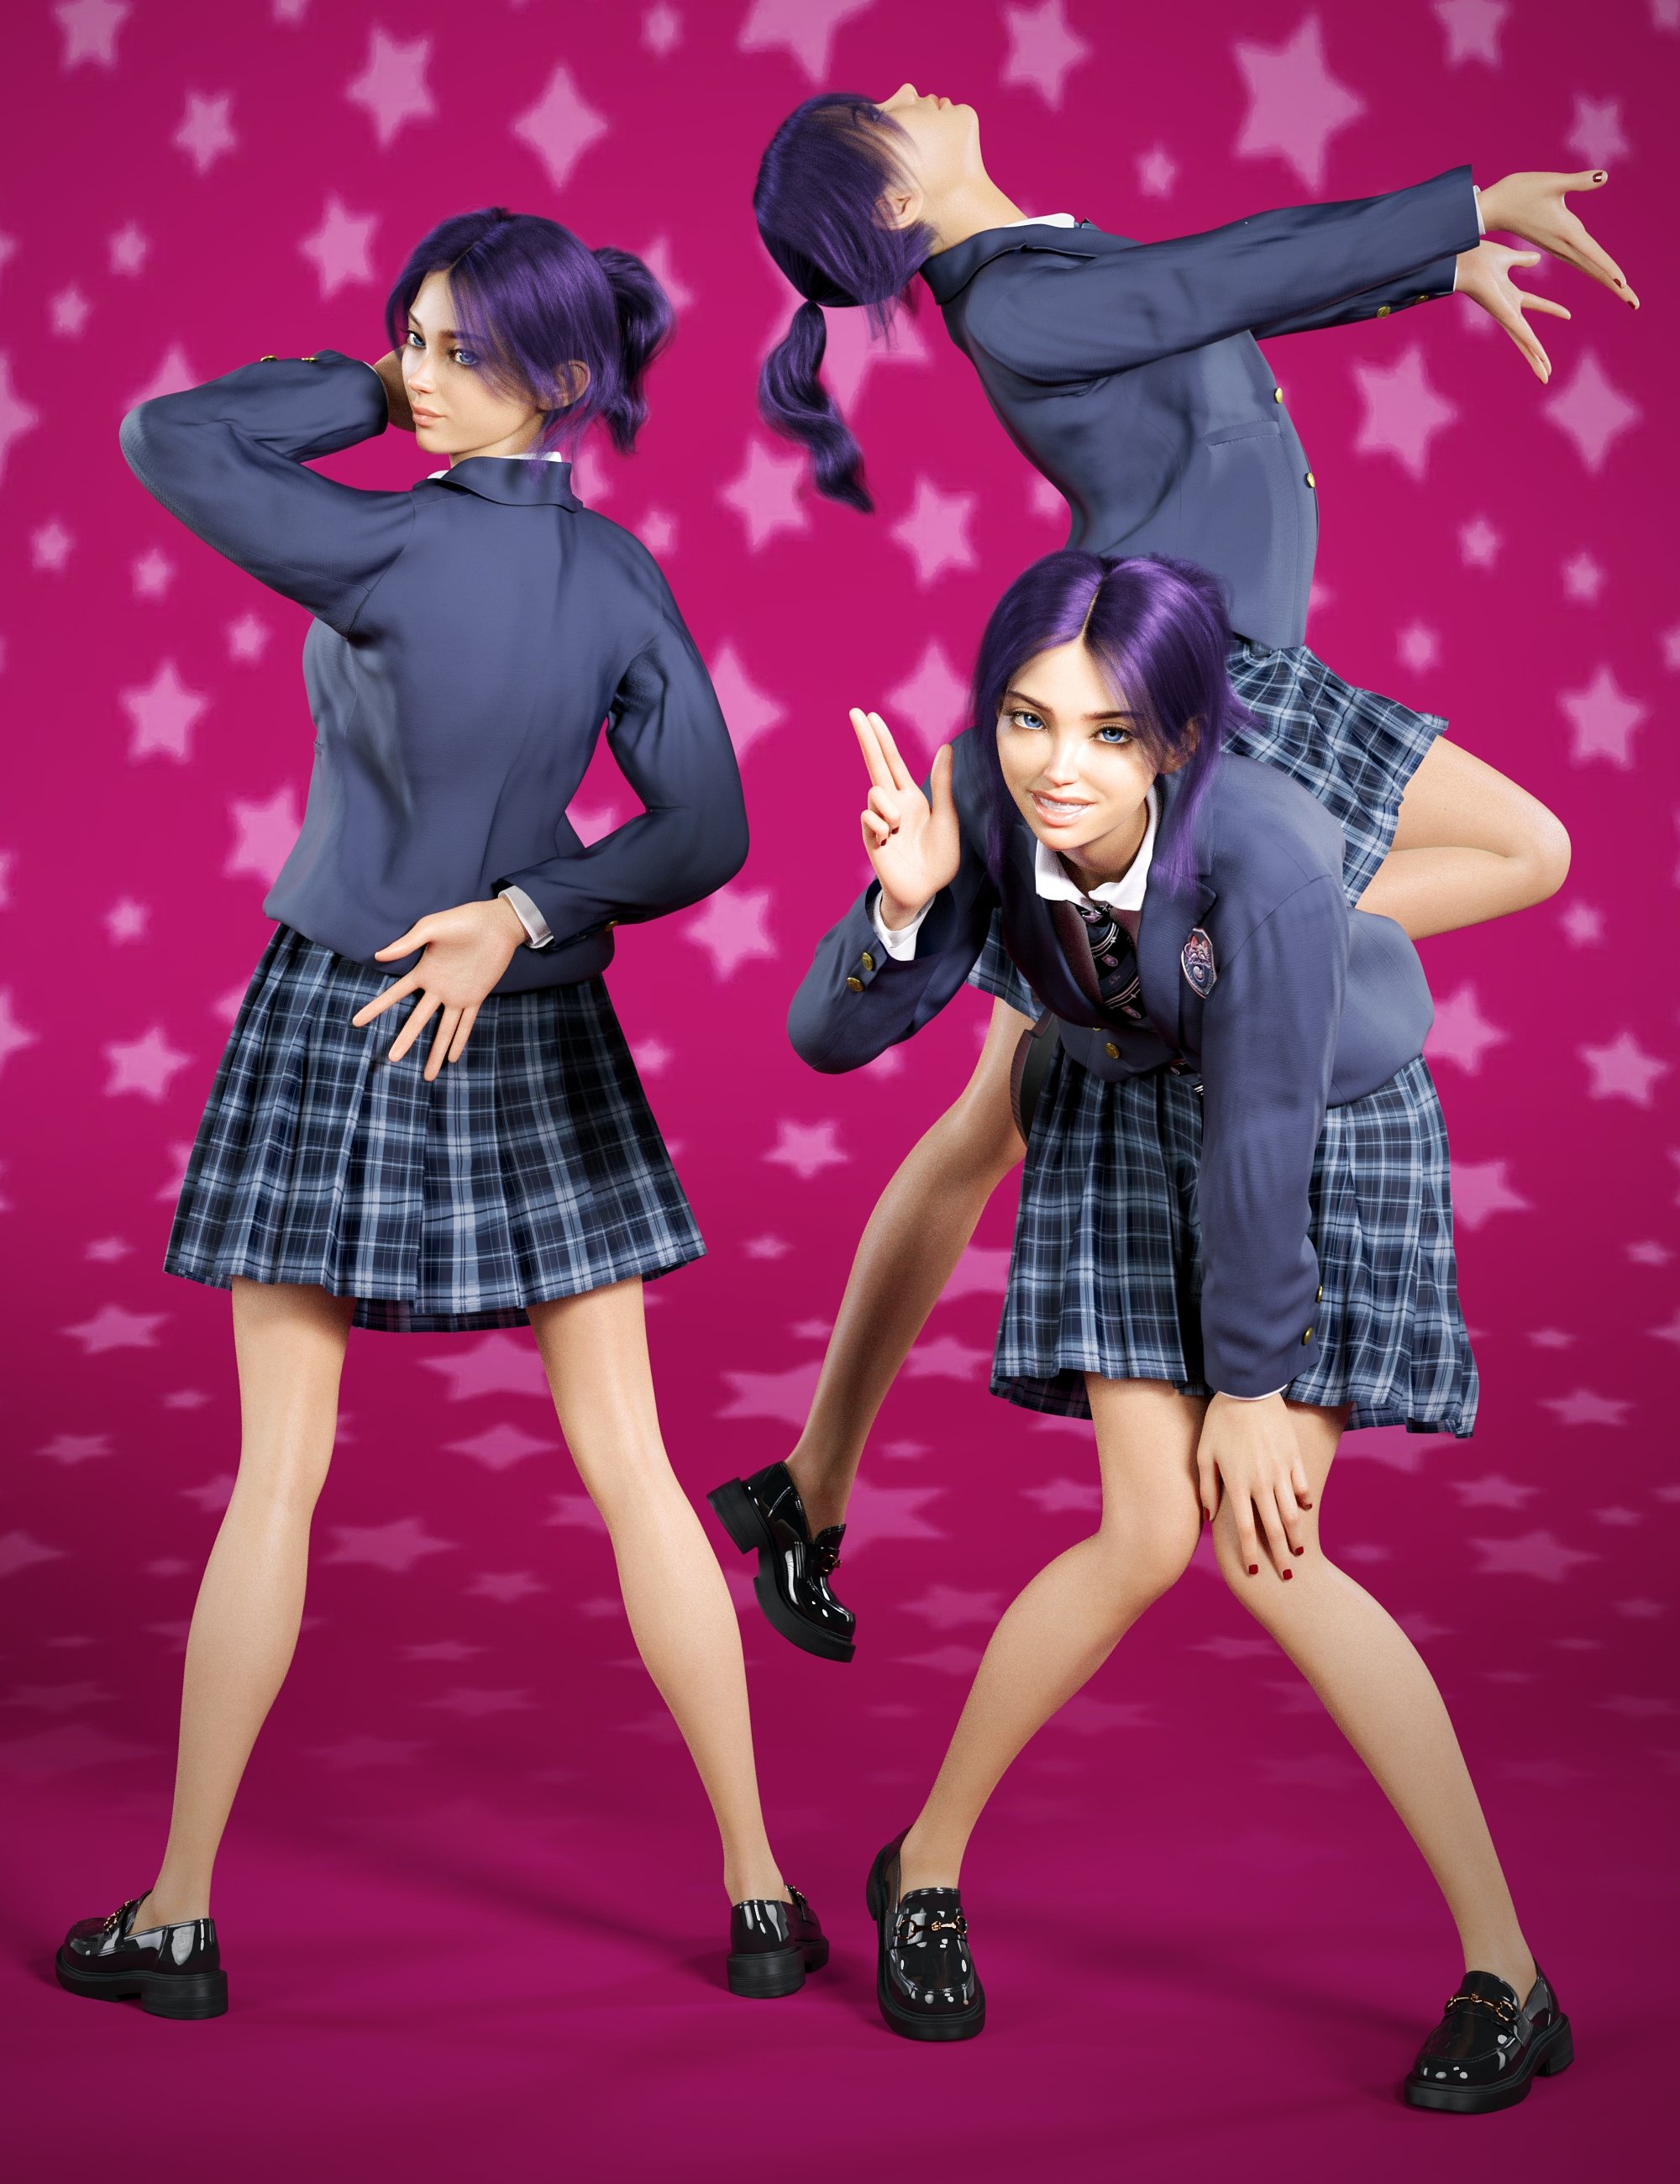 Anime Girl Poses